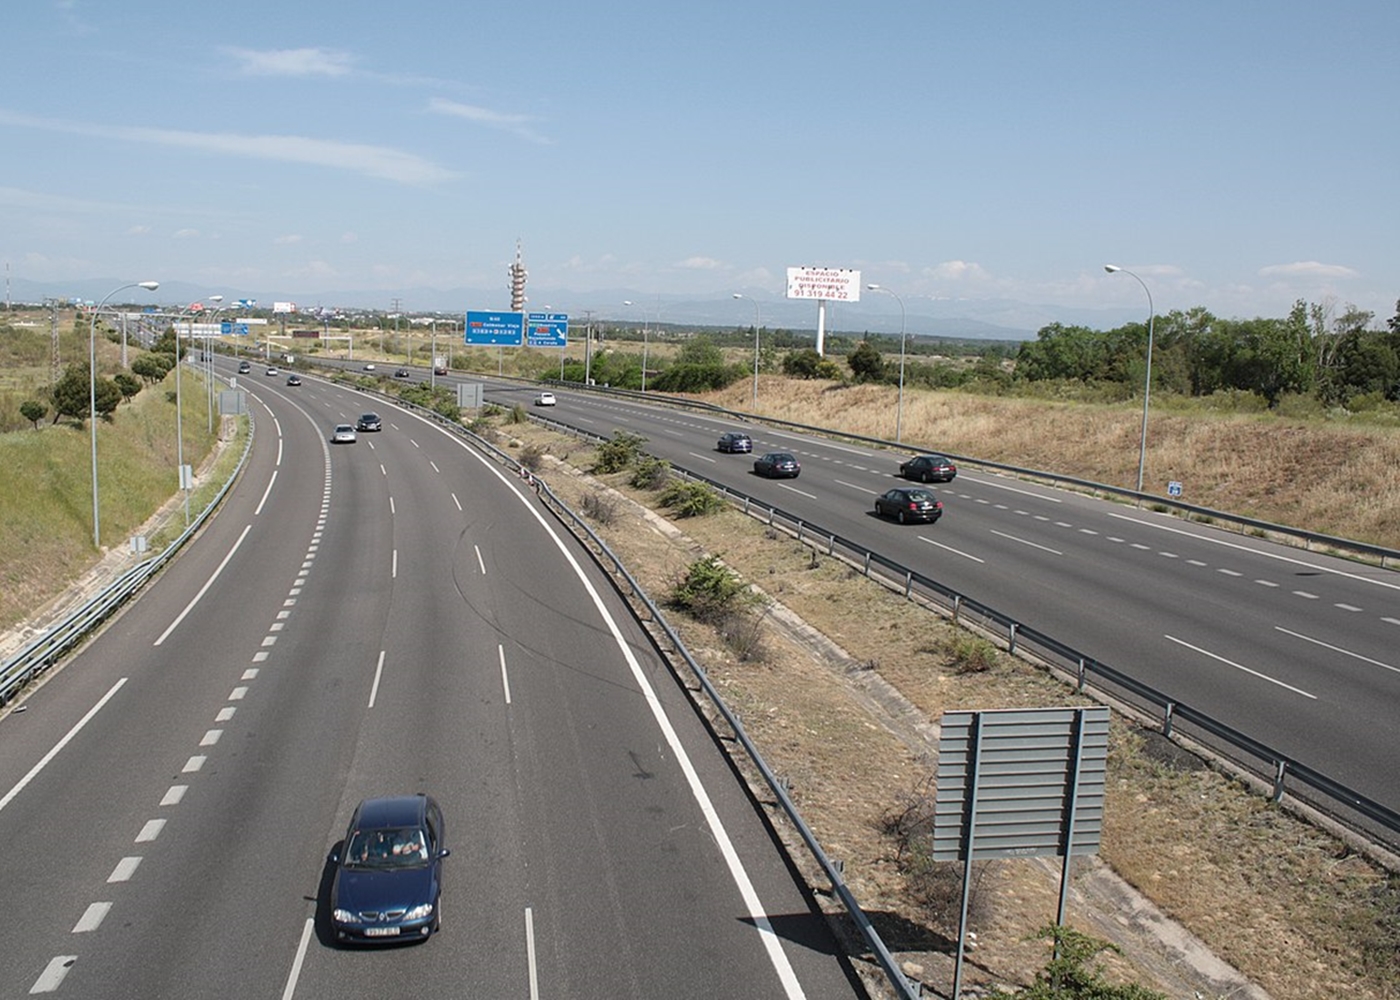 Los vehículos sin etiqueta de Alcorcón no podrán entrar a Madrid a partir del 1 de julio